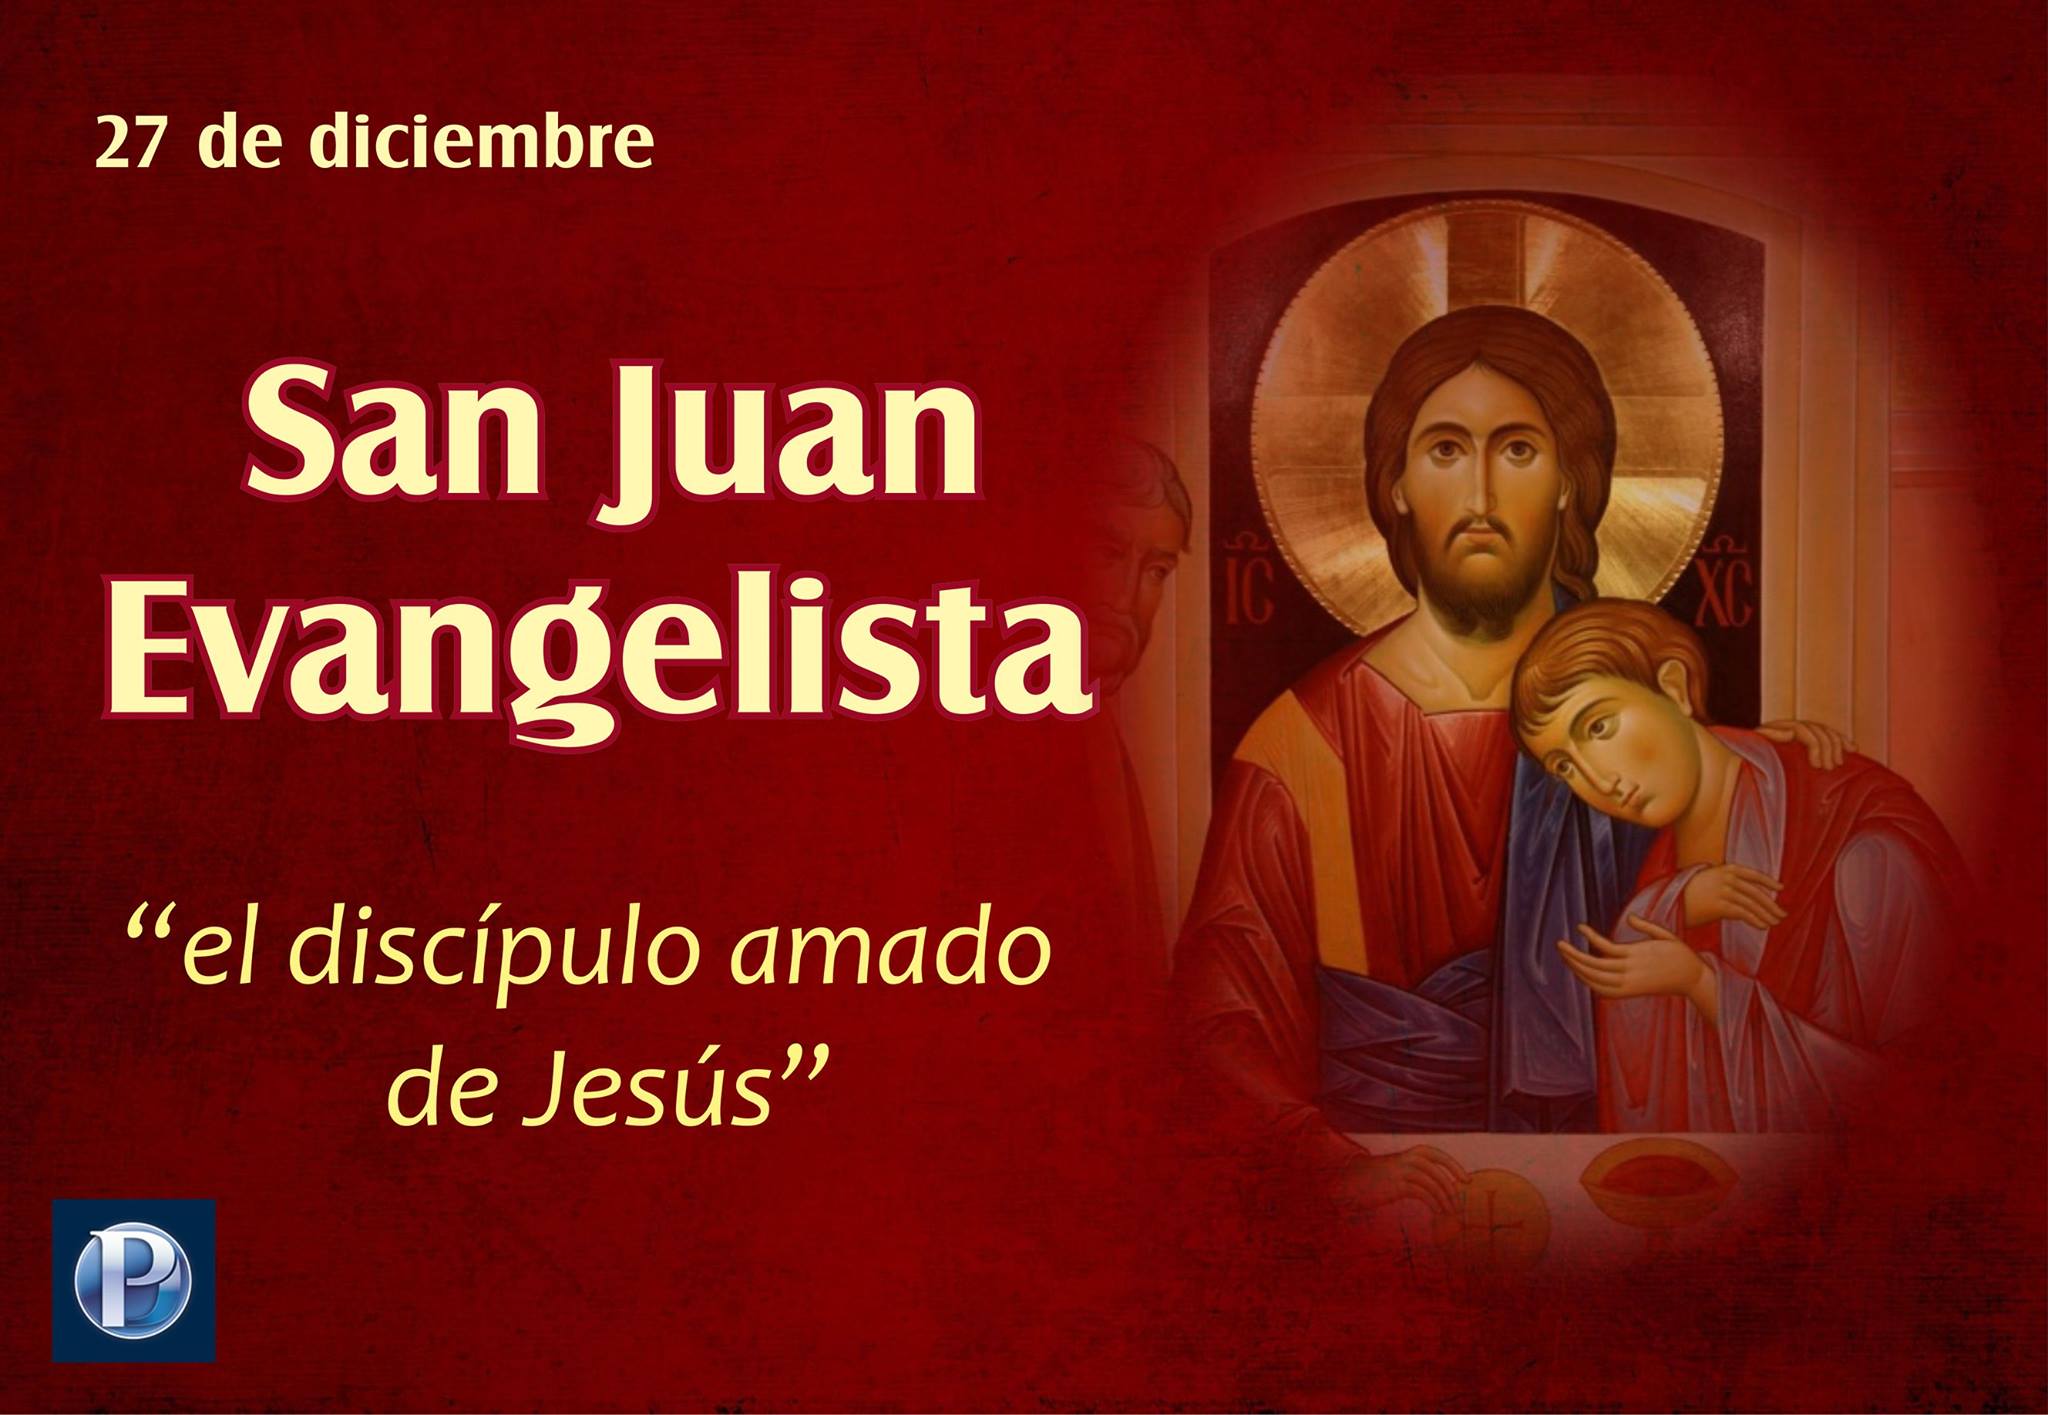 27 de diciembre: San Juan Evangelista